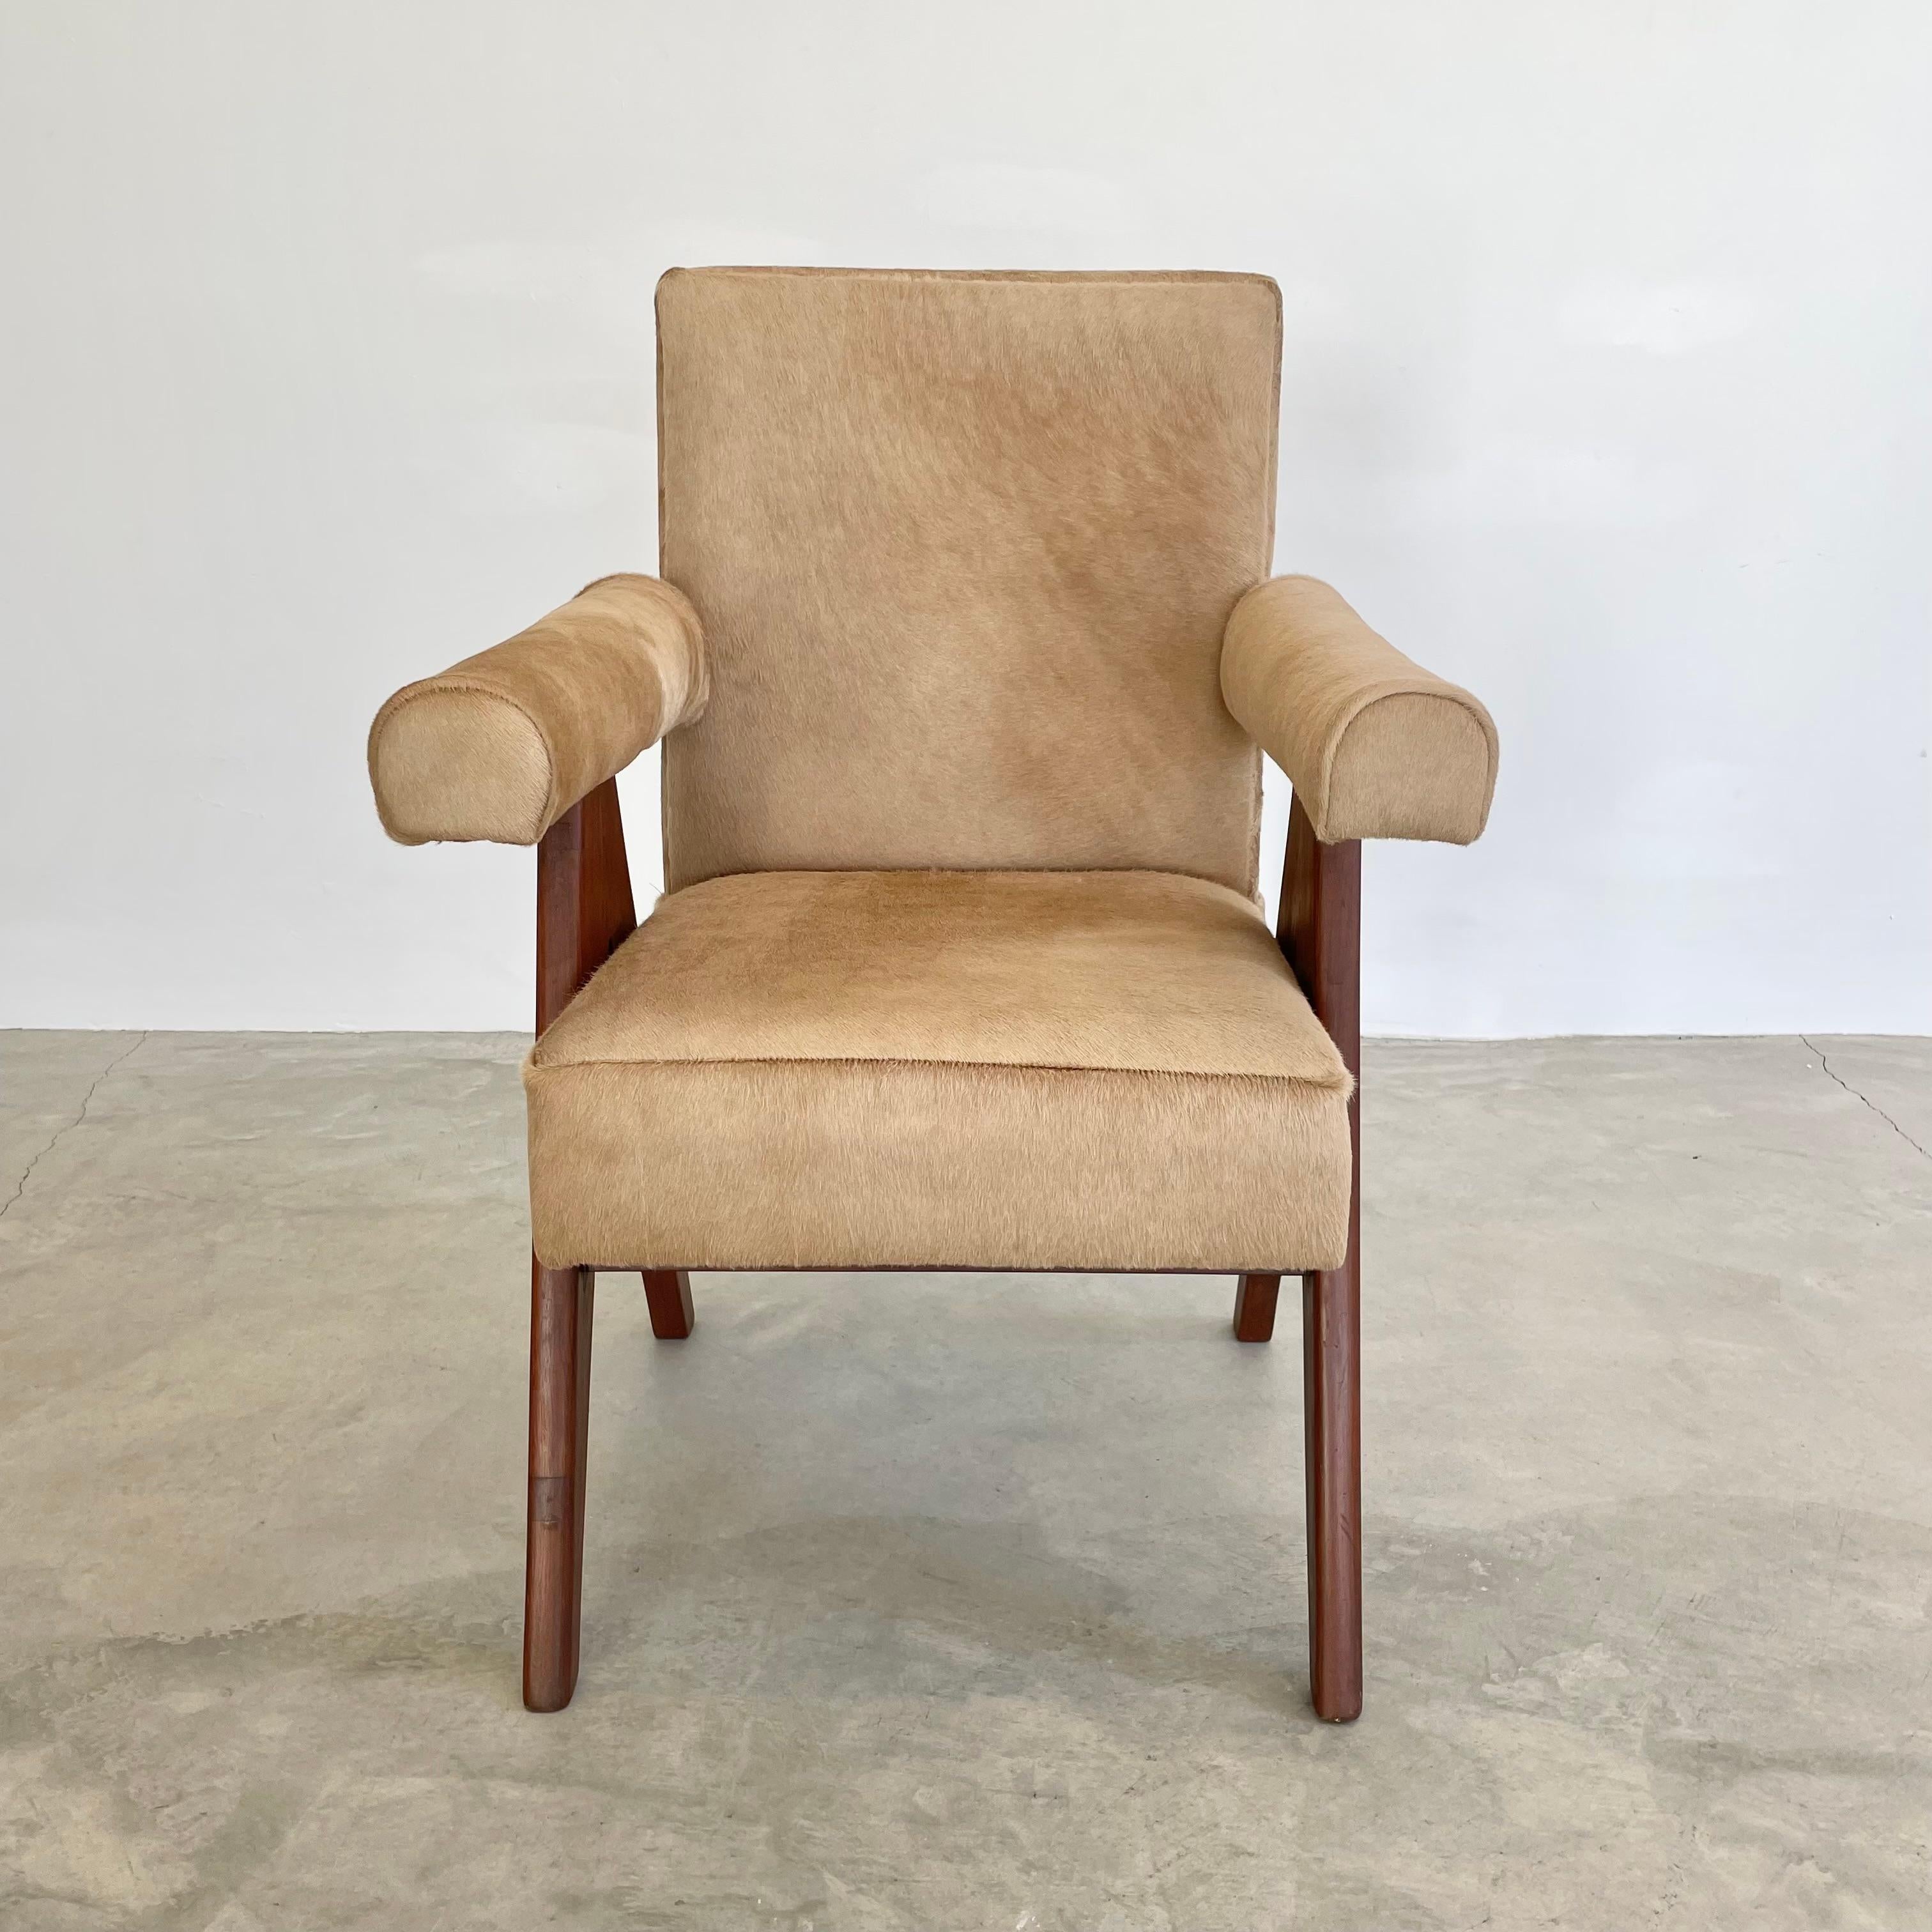 Superbe chaise sénatoriale en teck entièrement retapissée dans une peau de vache cappuccino, conçue par Pierre Jeanneret pour Chandigargh. Siège moelleux reposant sur deux 